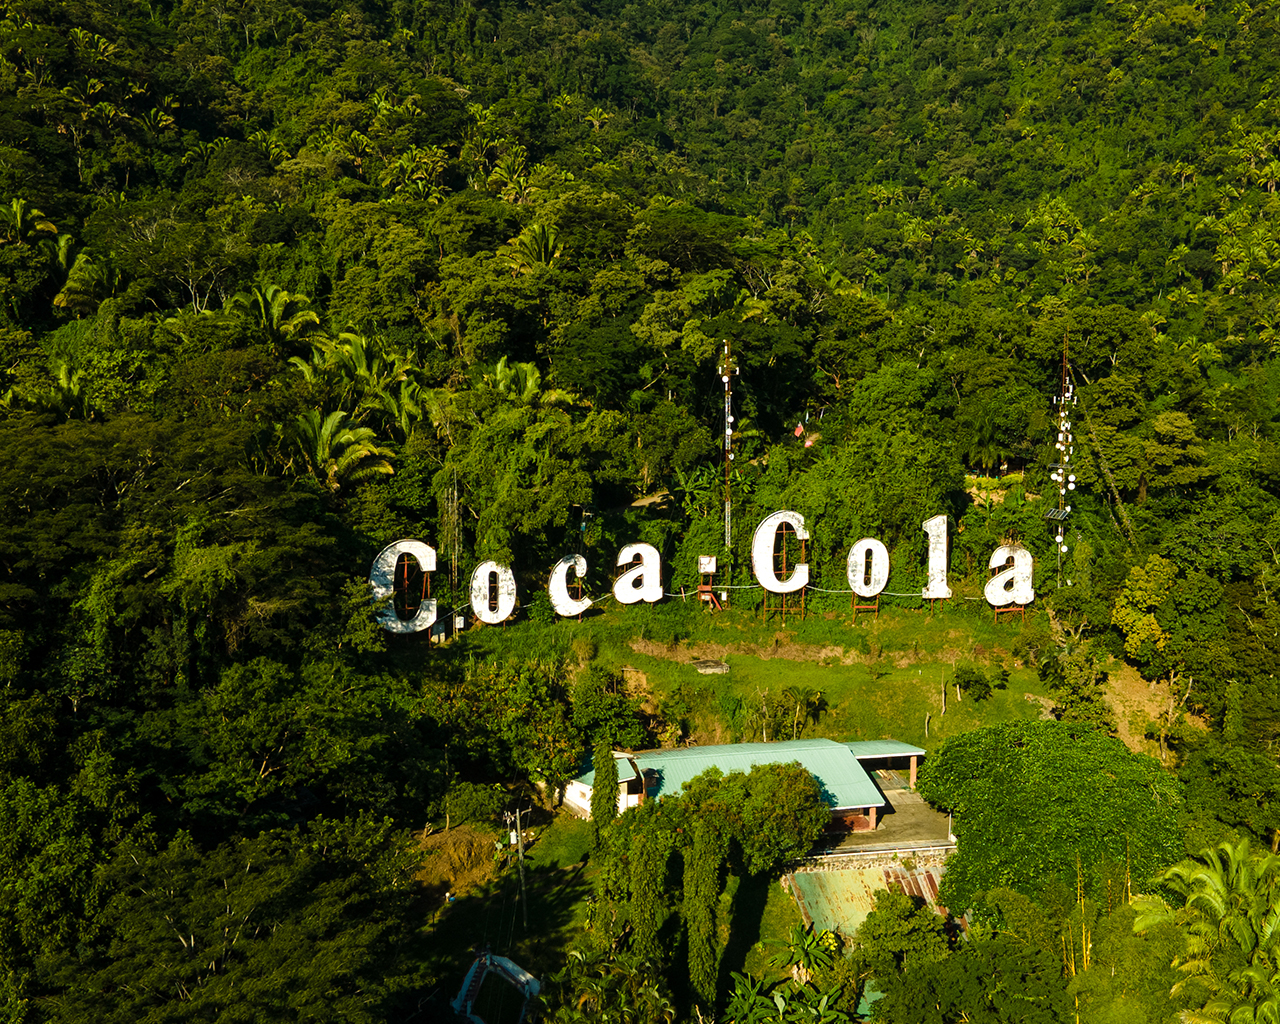 Coca-Cola-Schriftzug zwischen Bäumen